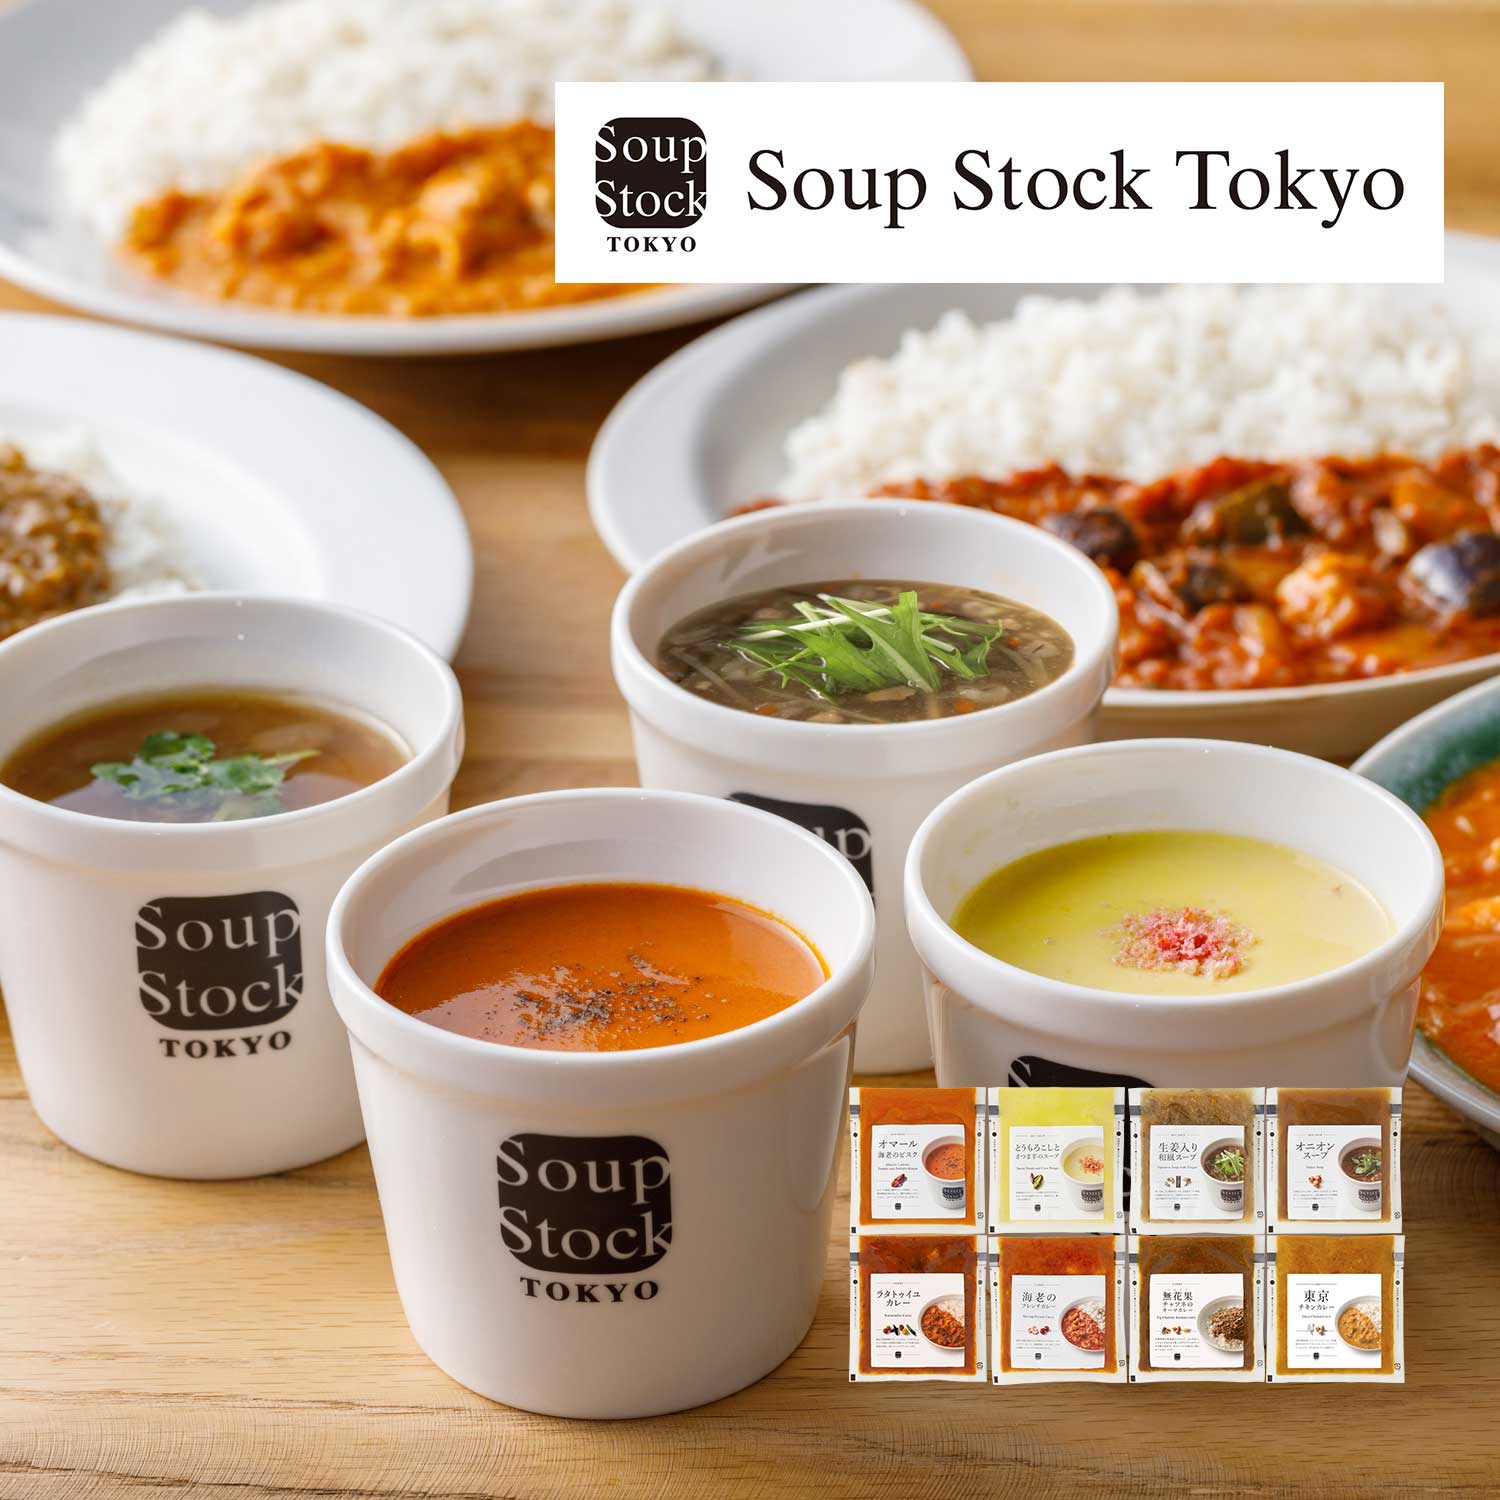 【Soup Stock Tokyo】【秋の贈りものキャンペーン対象】 スープとカレーのセット8個入